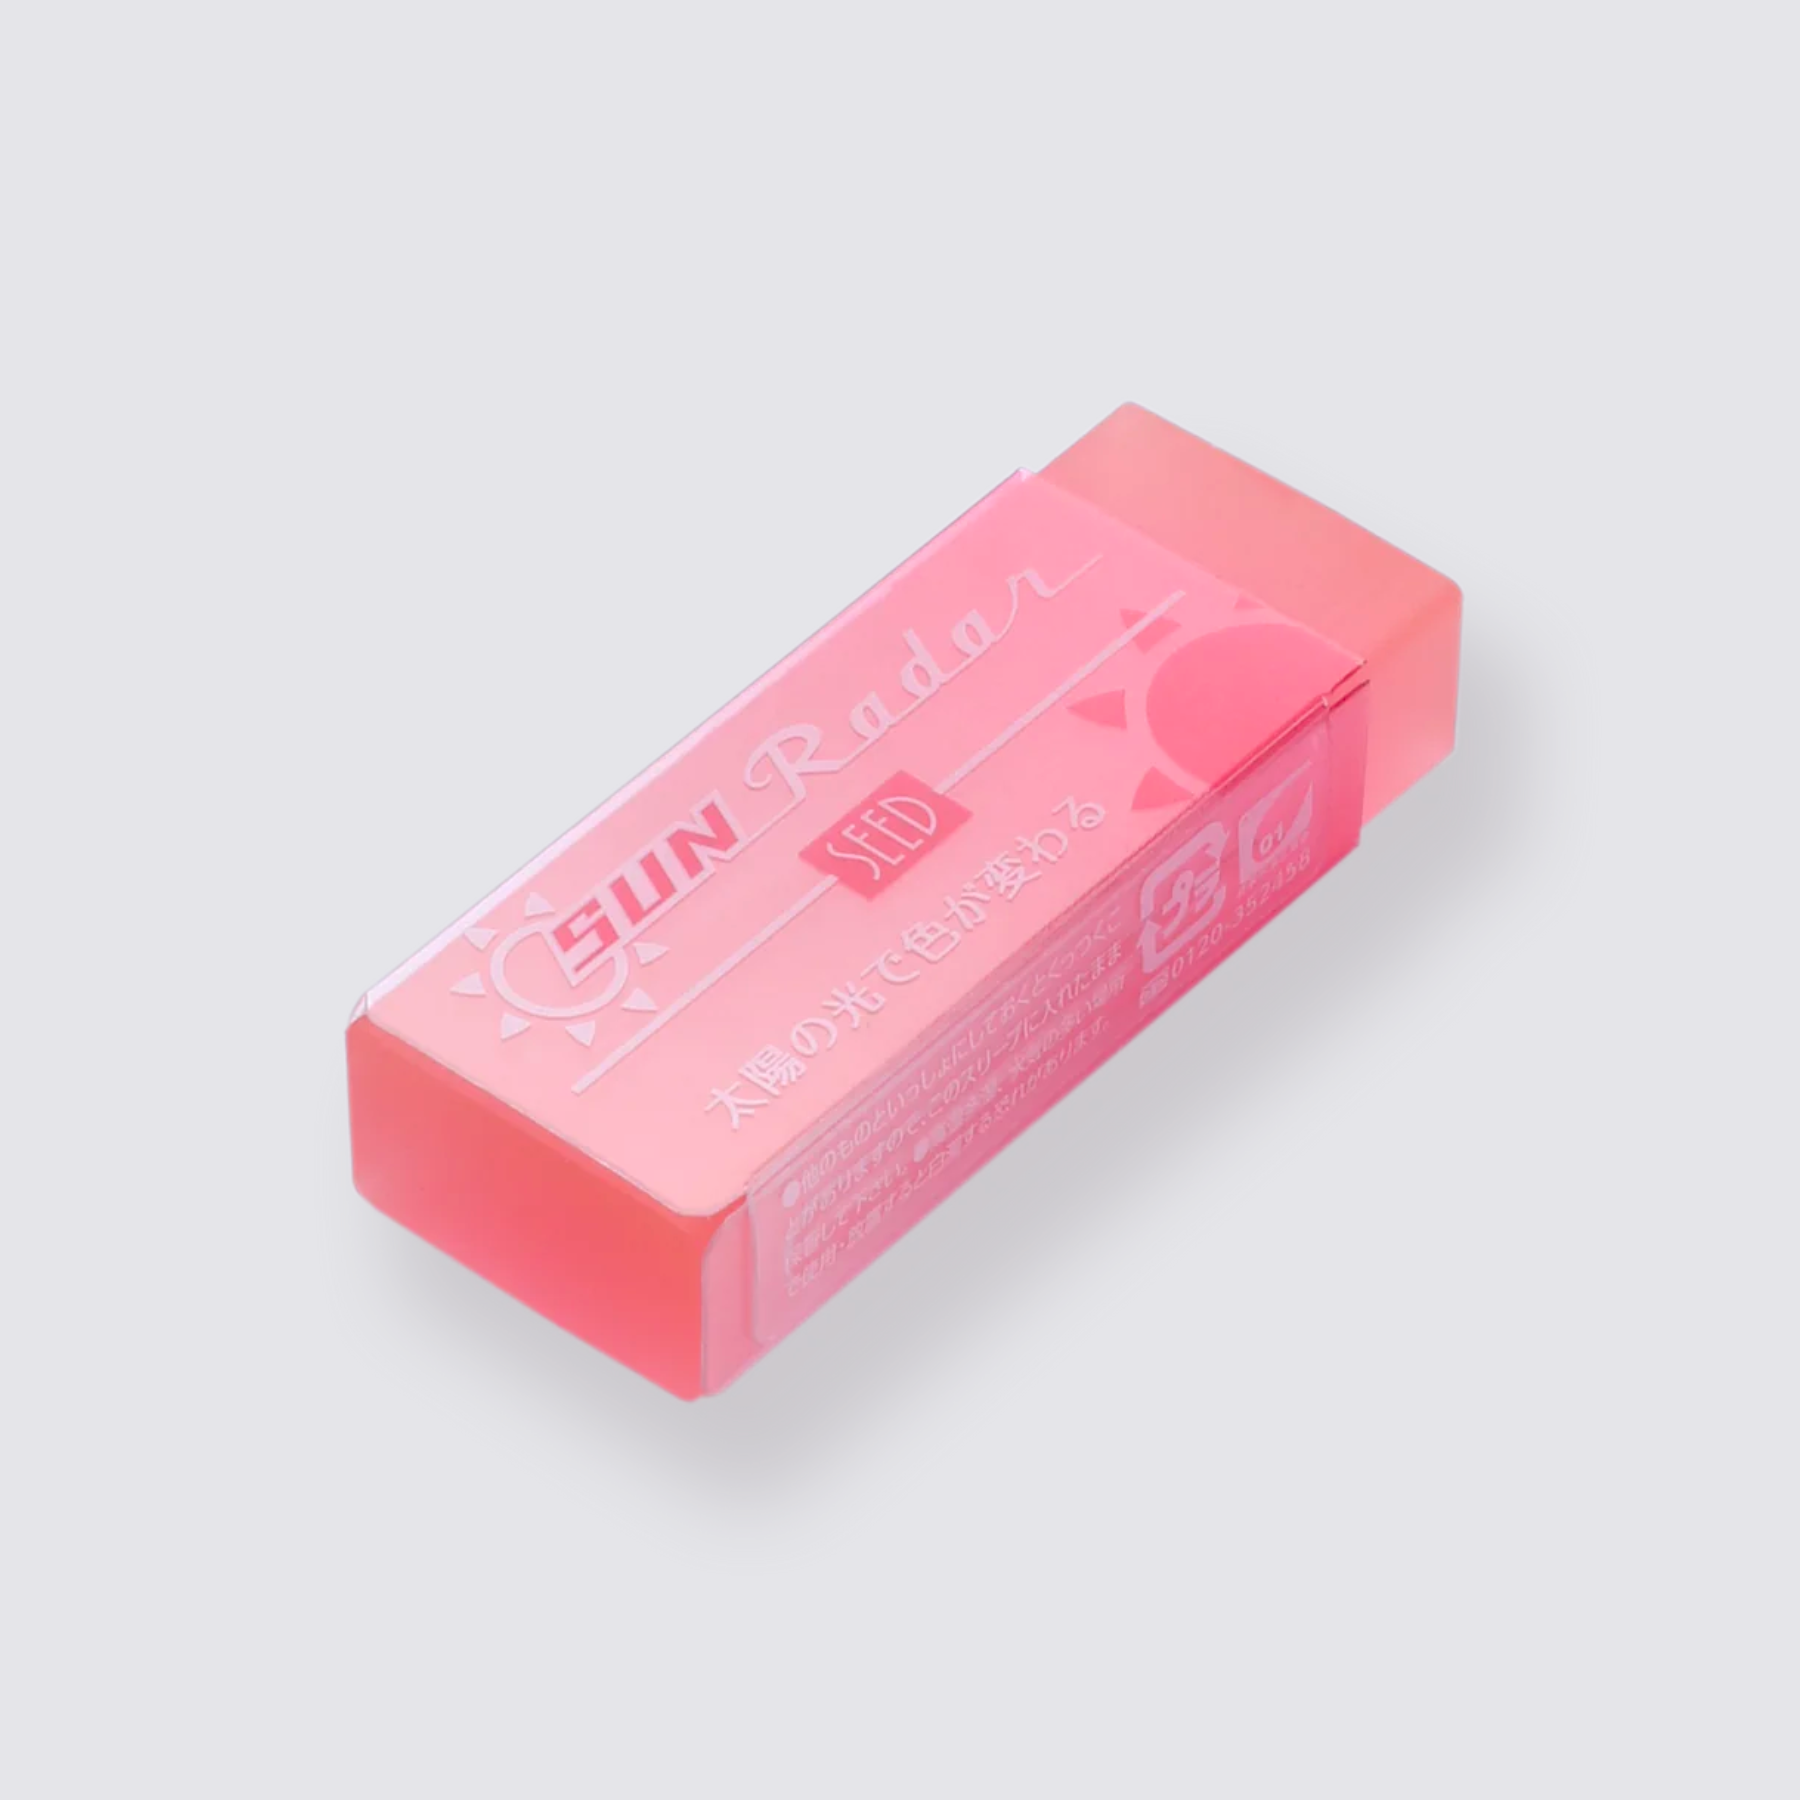 Colour Changing Eraser - Pink Violet